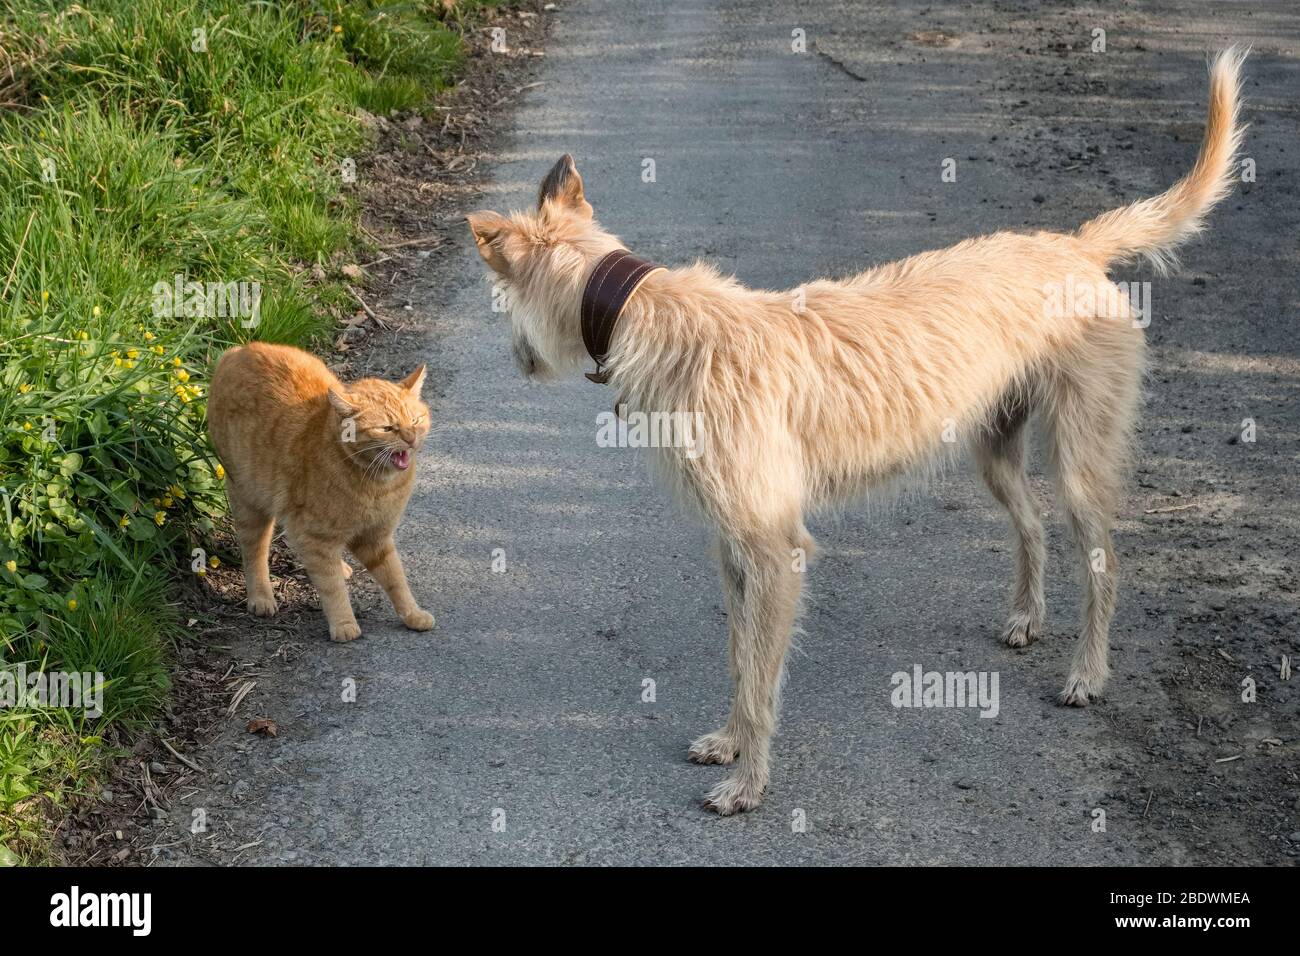 Distanza sociale tra gli animali - un gatto di manx senza coda si prende cura dei suoi denti come minaccia un inquisitivo cane da lurcher che è venuto troppo vicino Foto Stock